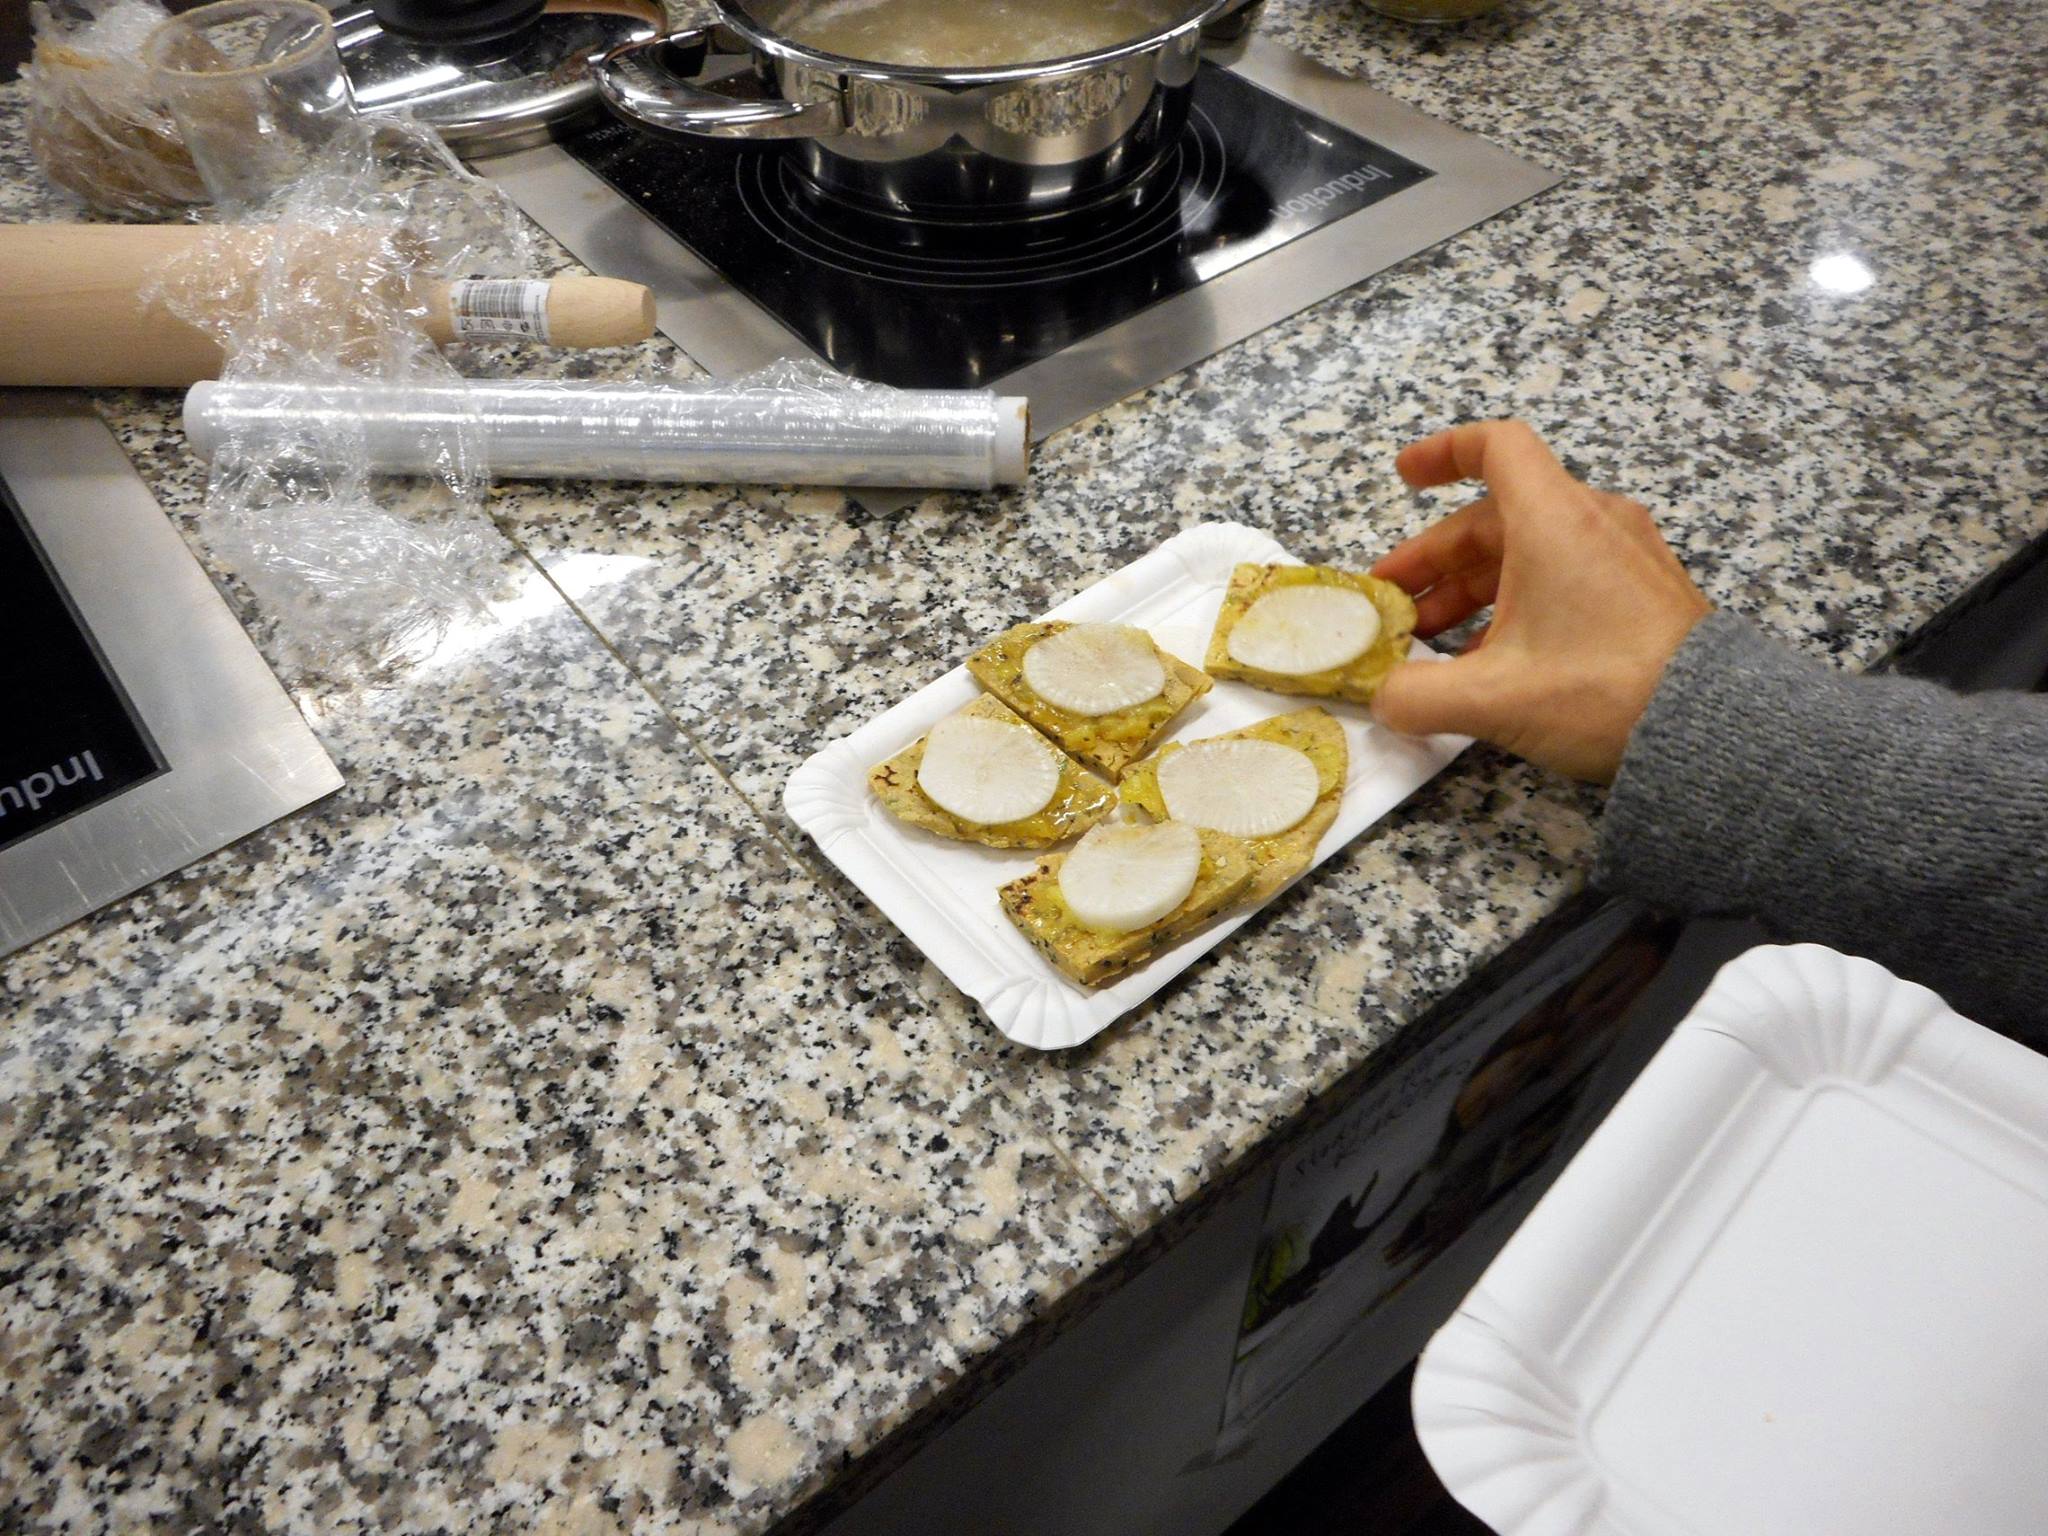 Chlebki z domowym wegańskim smalczykiem i białą rzodkwią również szybko znikały :)